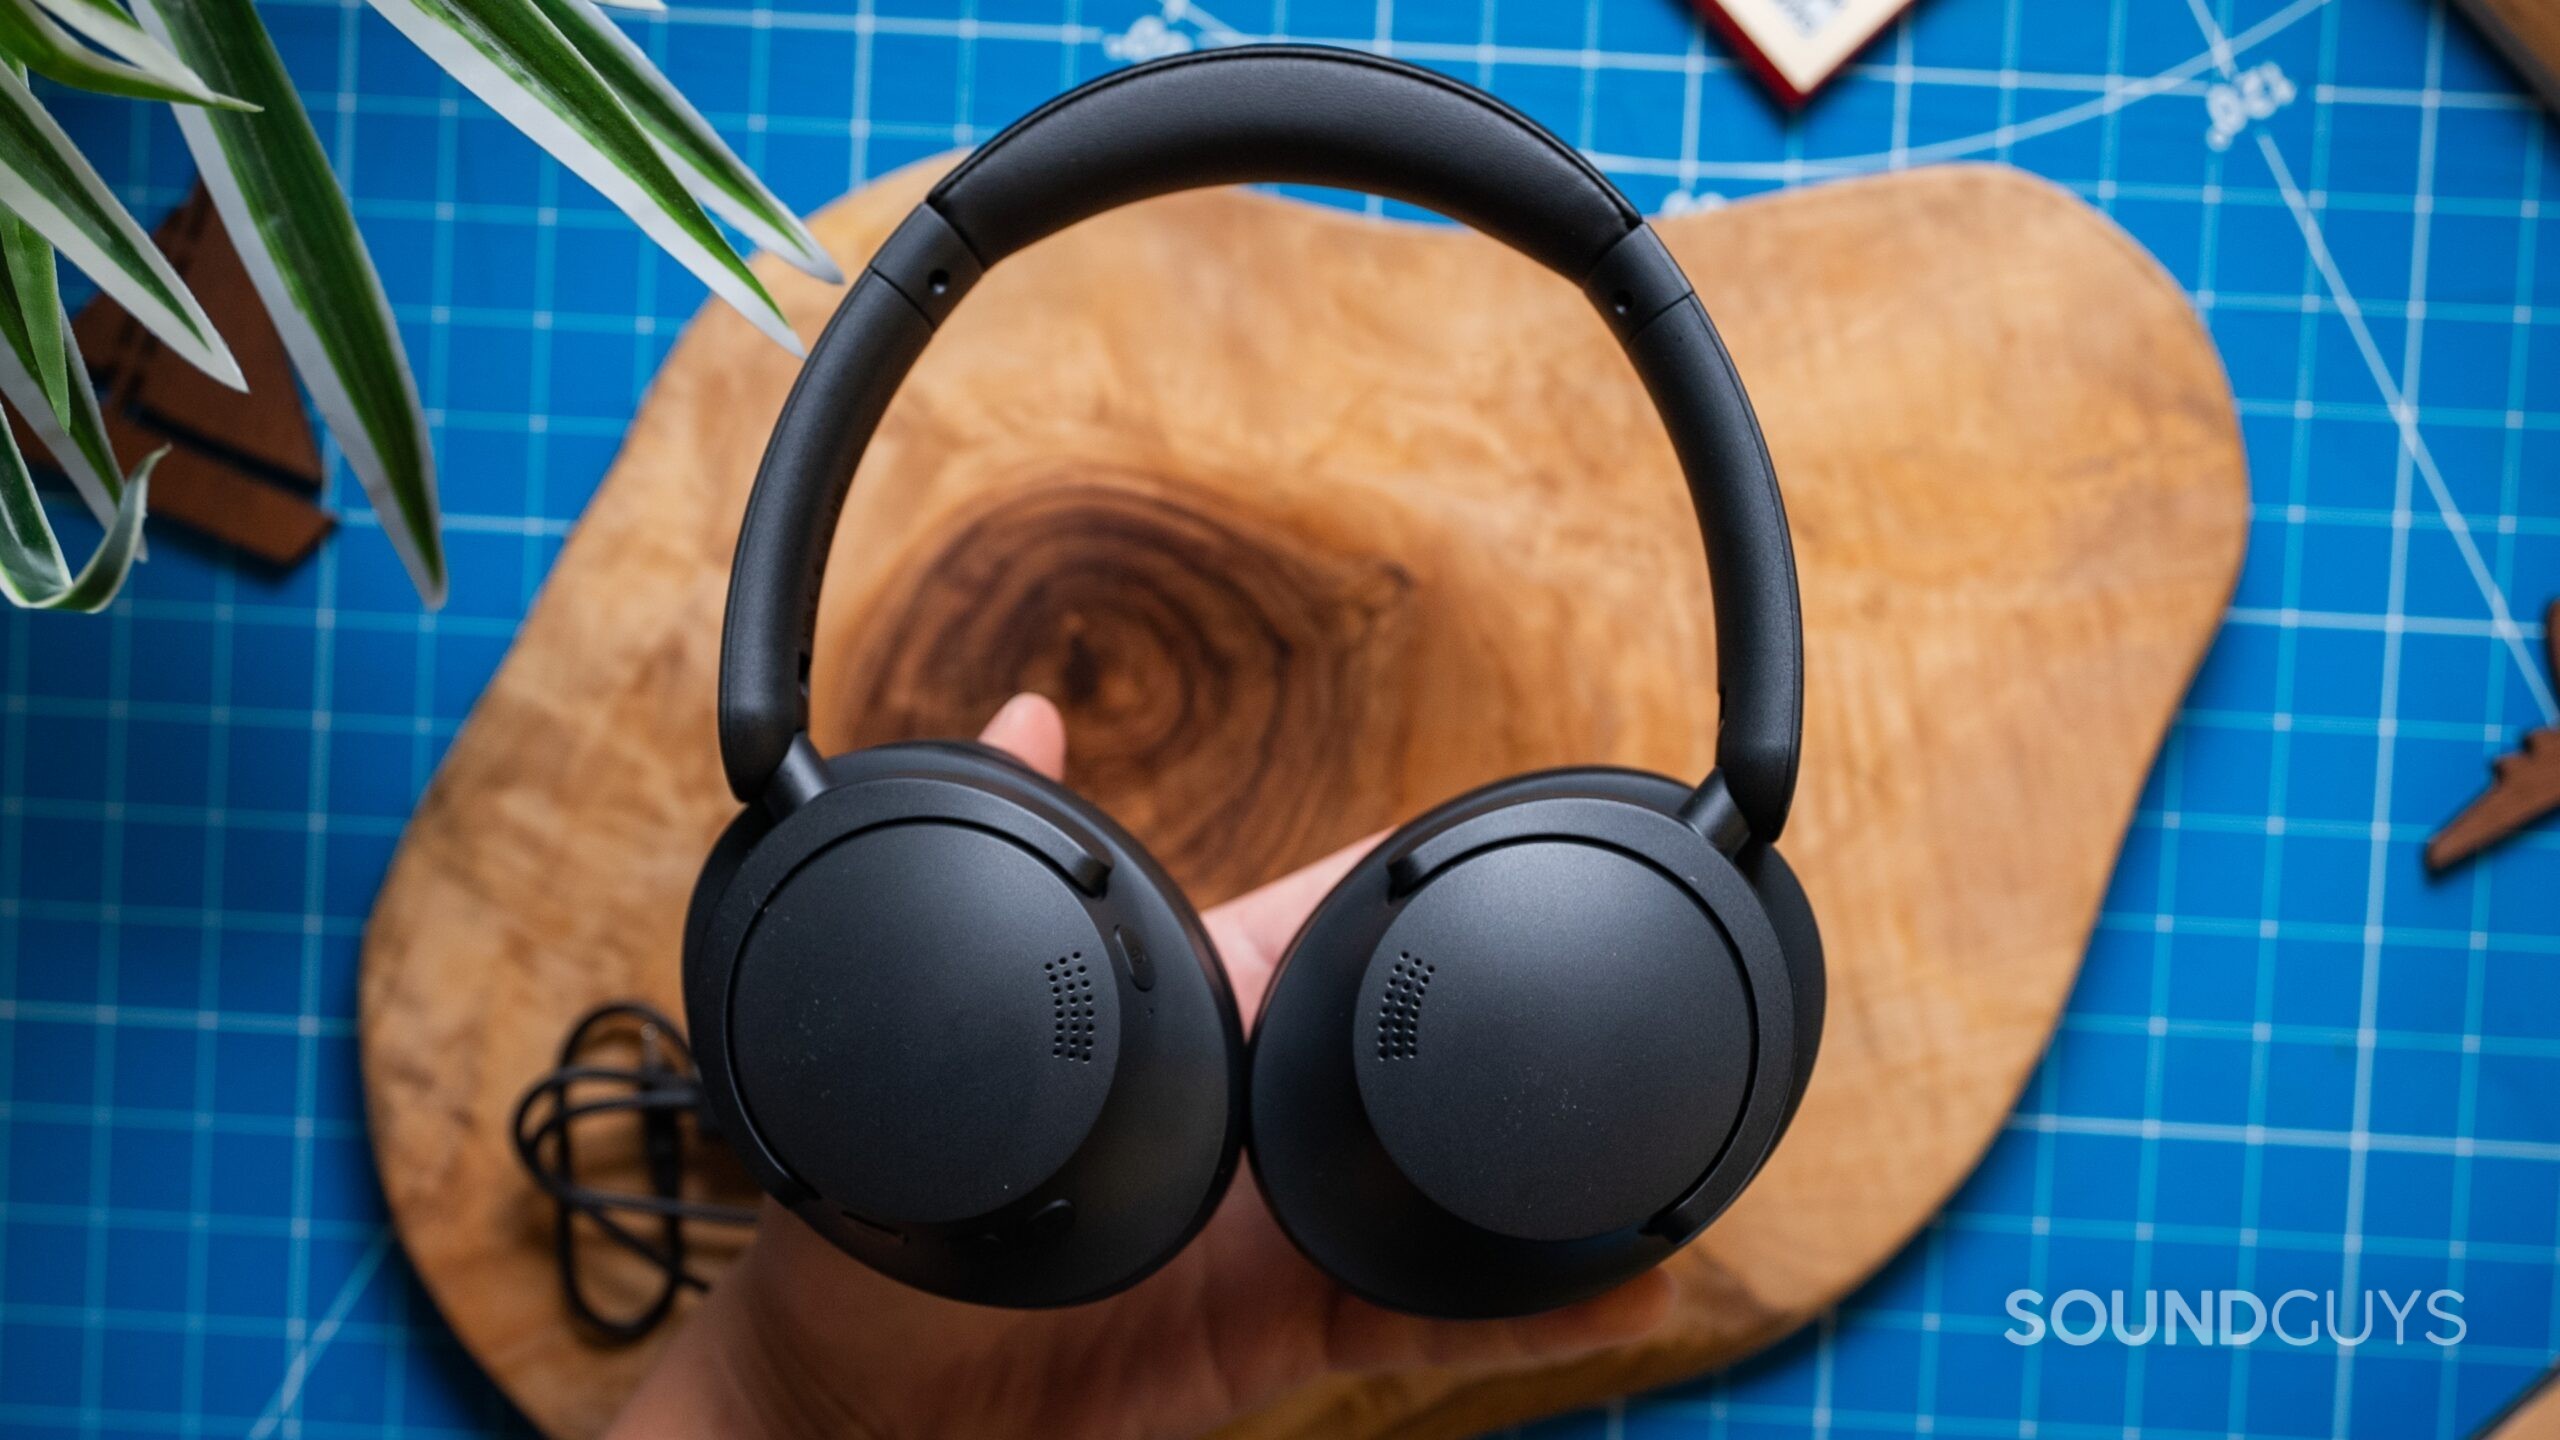 1More's new SonoFlow LDAC headphones get 50 hours of play